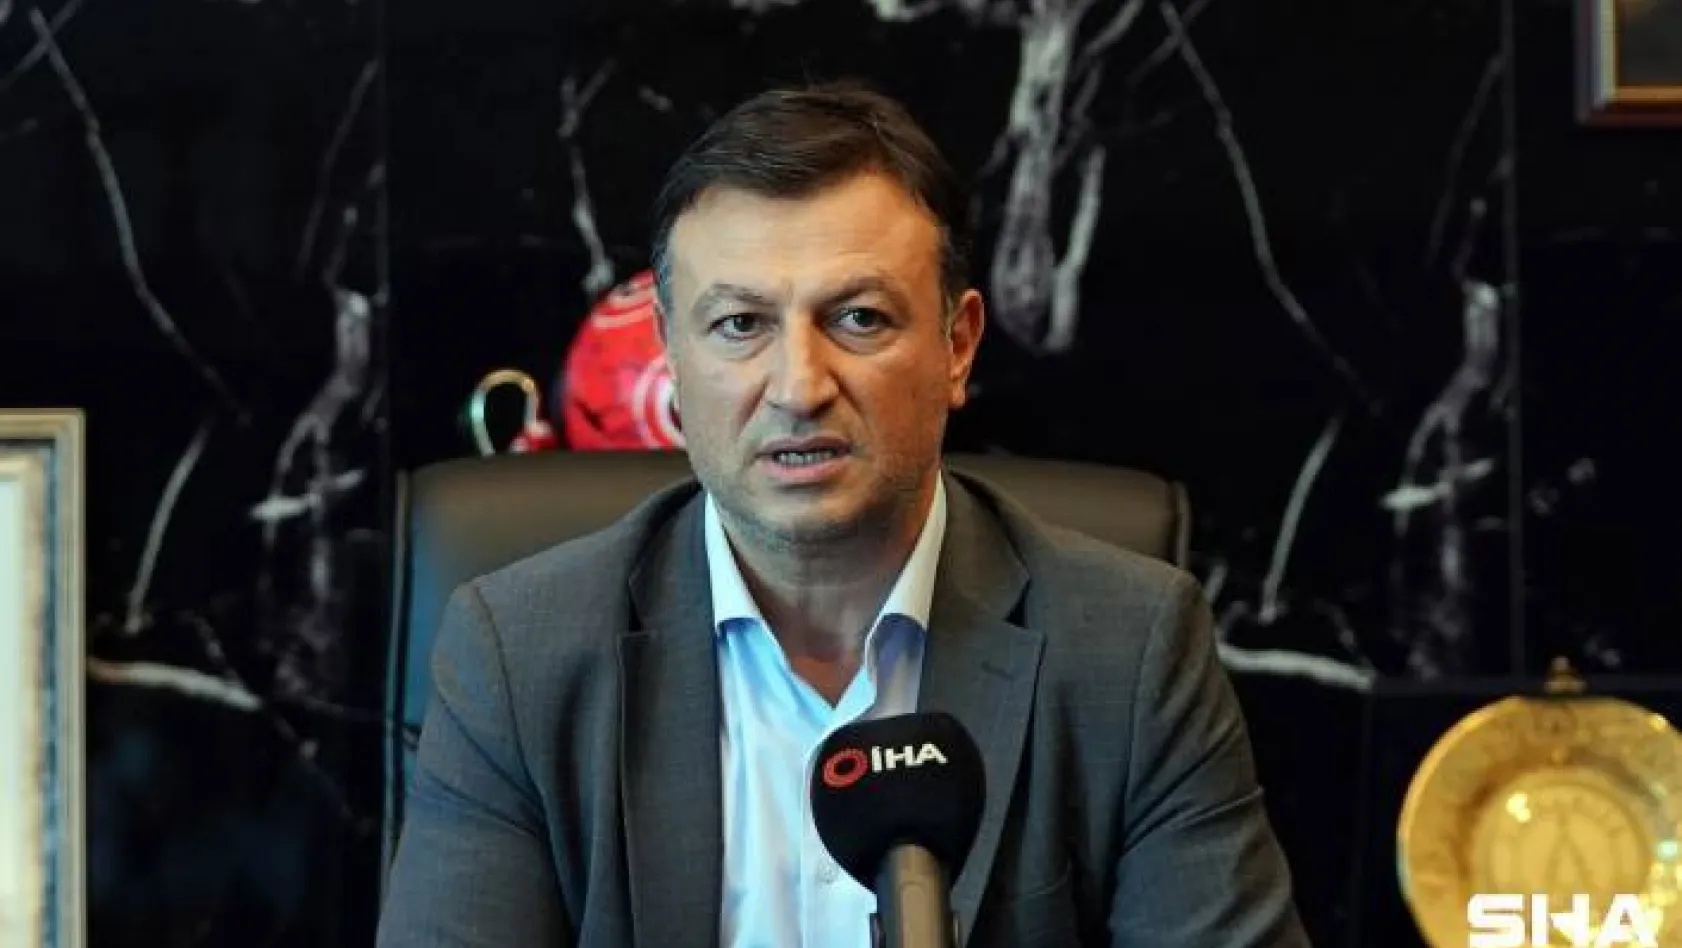 (Özel haber) Ümraniyespor Başkanı Tarık Aksar: "İnşallah VAR sistemini 1. Lig'de daha ileri kademeye götürürüz"